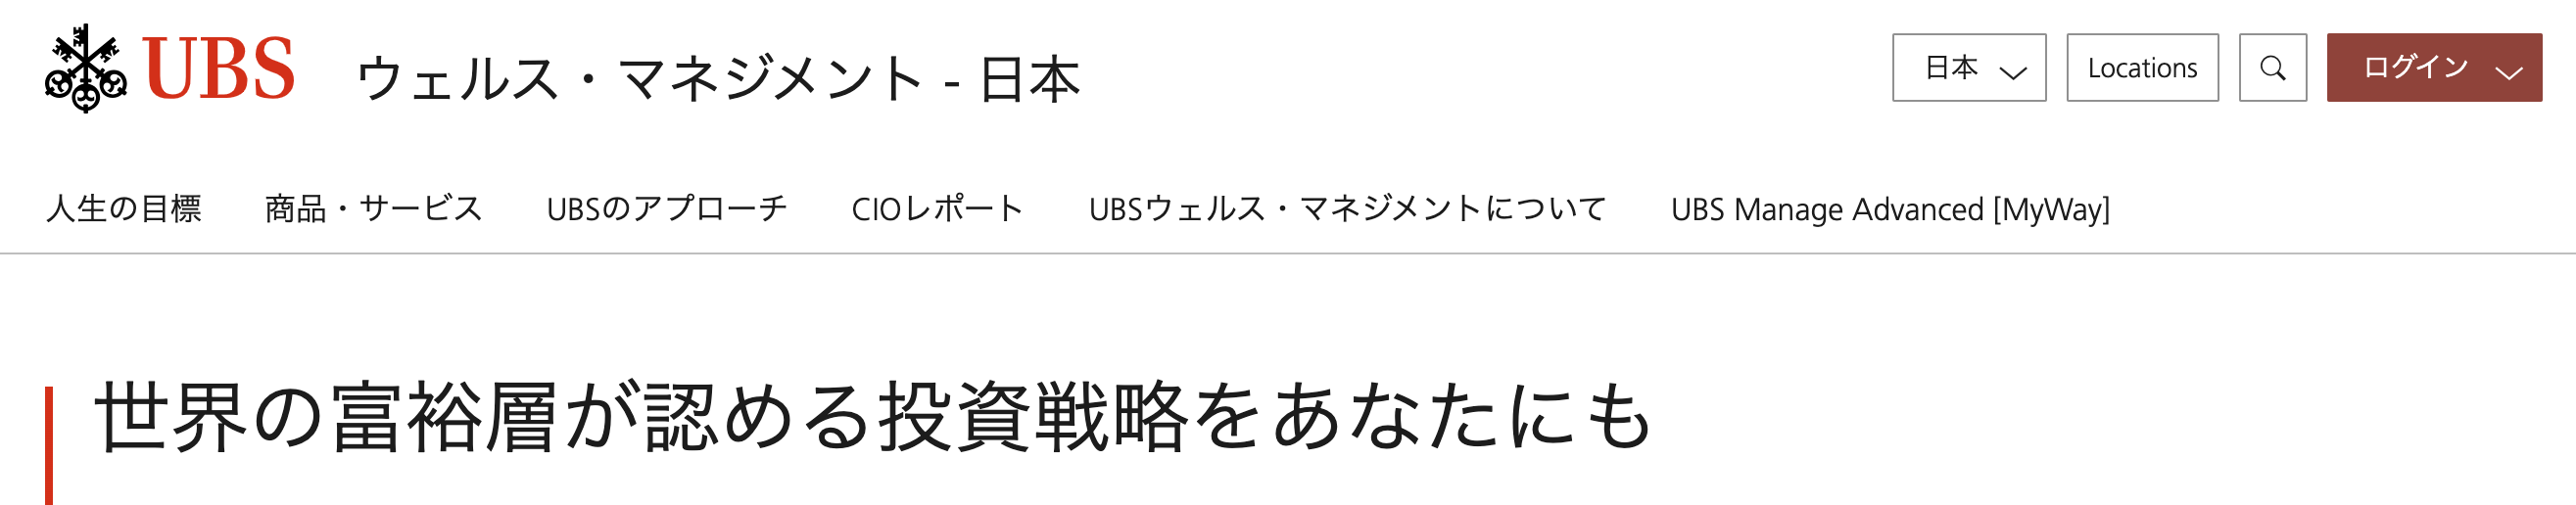 UBS ウェルス・マネジメント - 日本